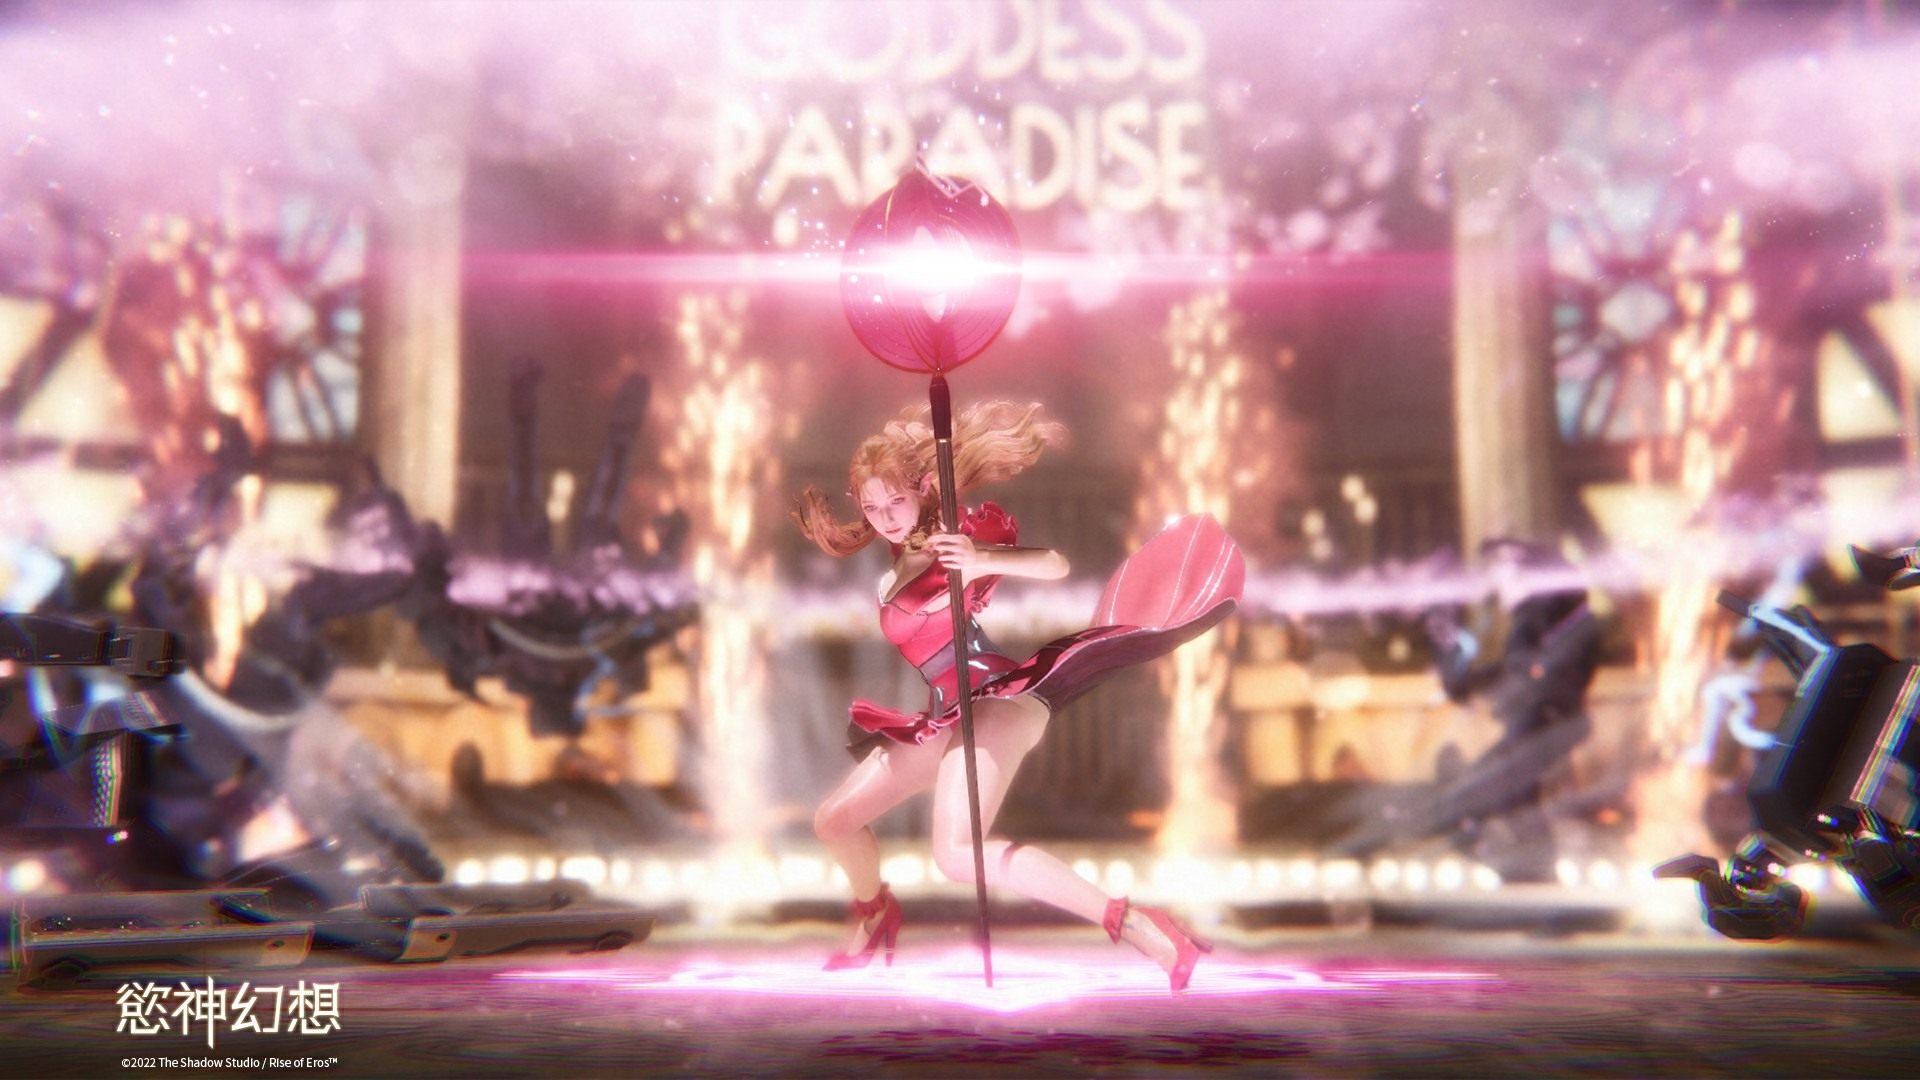 《慾神幻想 Rise of Eros》次時代頂級美術RPG遊戲 追隨女神